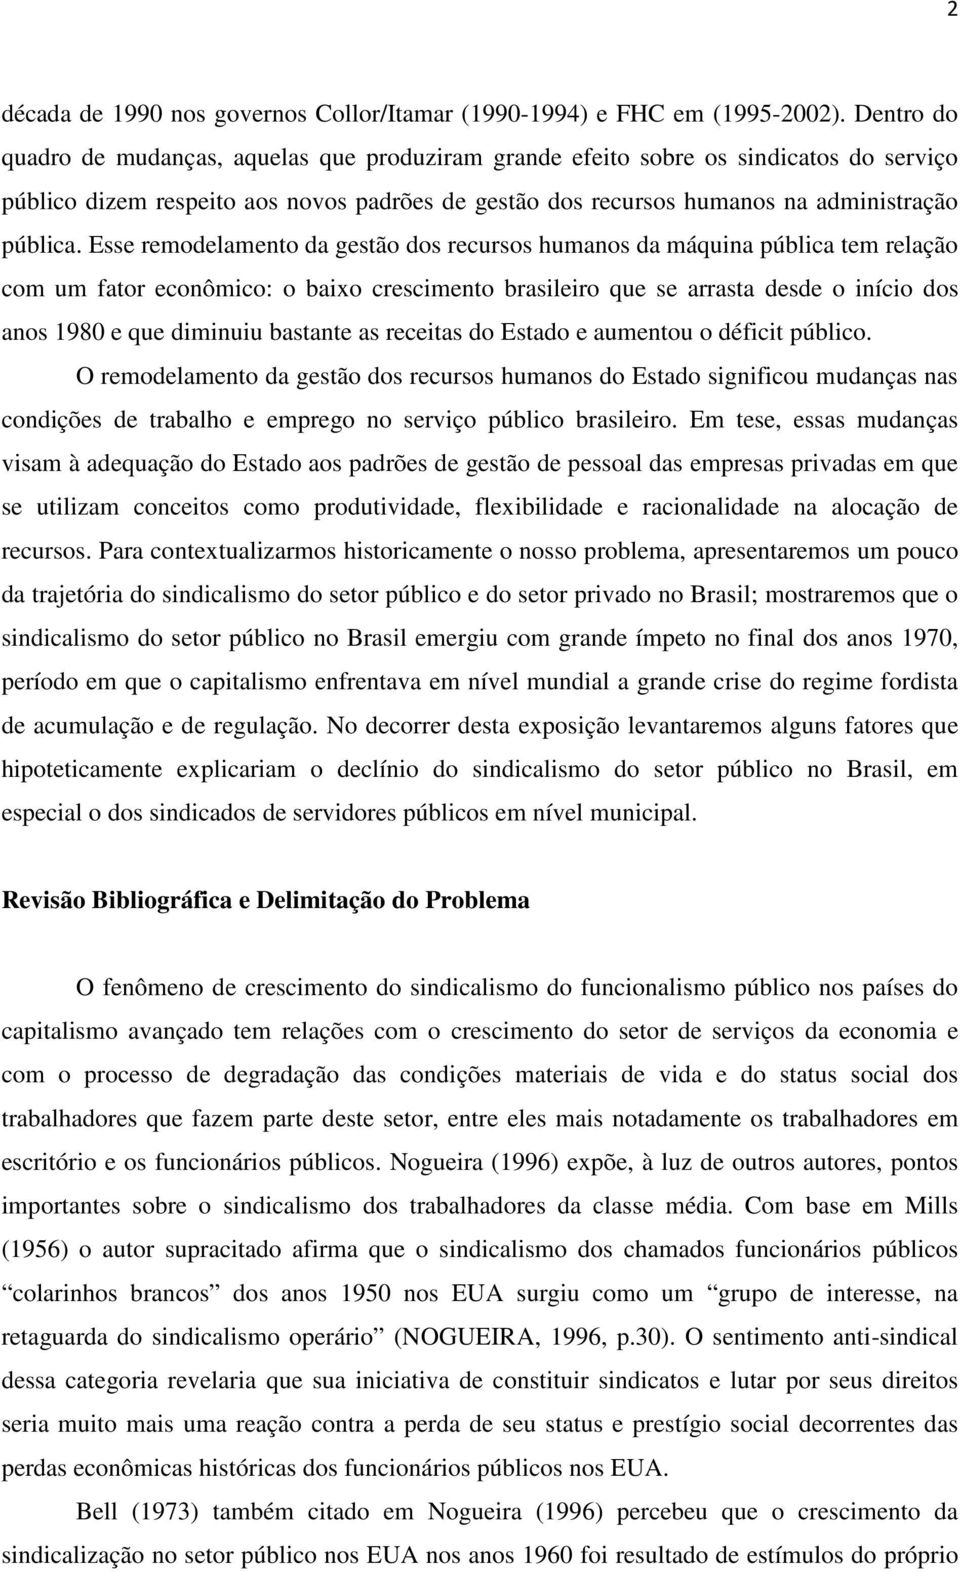 Esse remodelamento da gestão dos recursos humanos da máquina pública tem relação com um fator econômico: o baixo crescimento brasileiro que se arrasta desde o início dos anos 1980 e que diminuiu